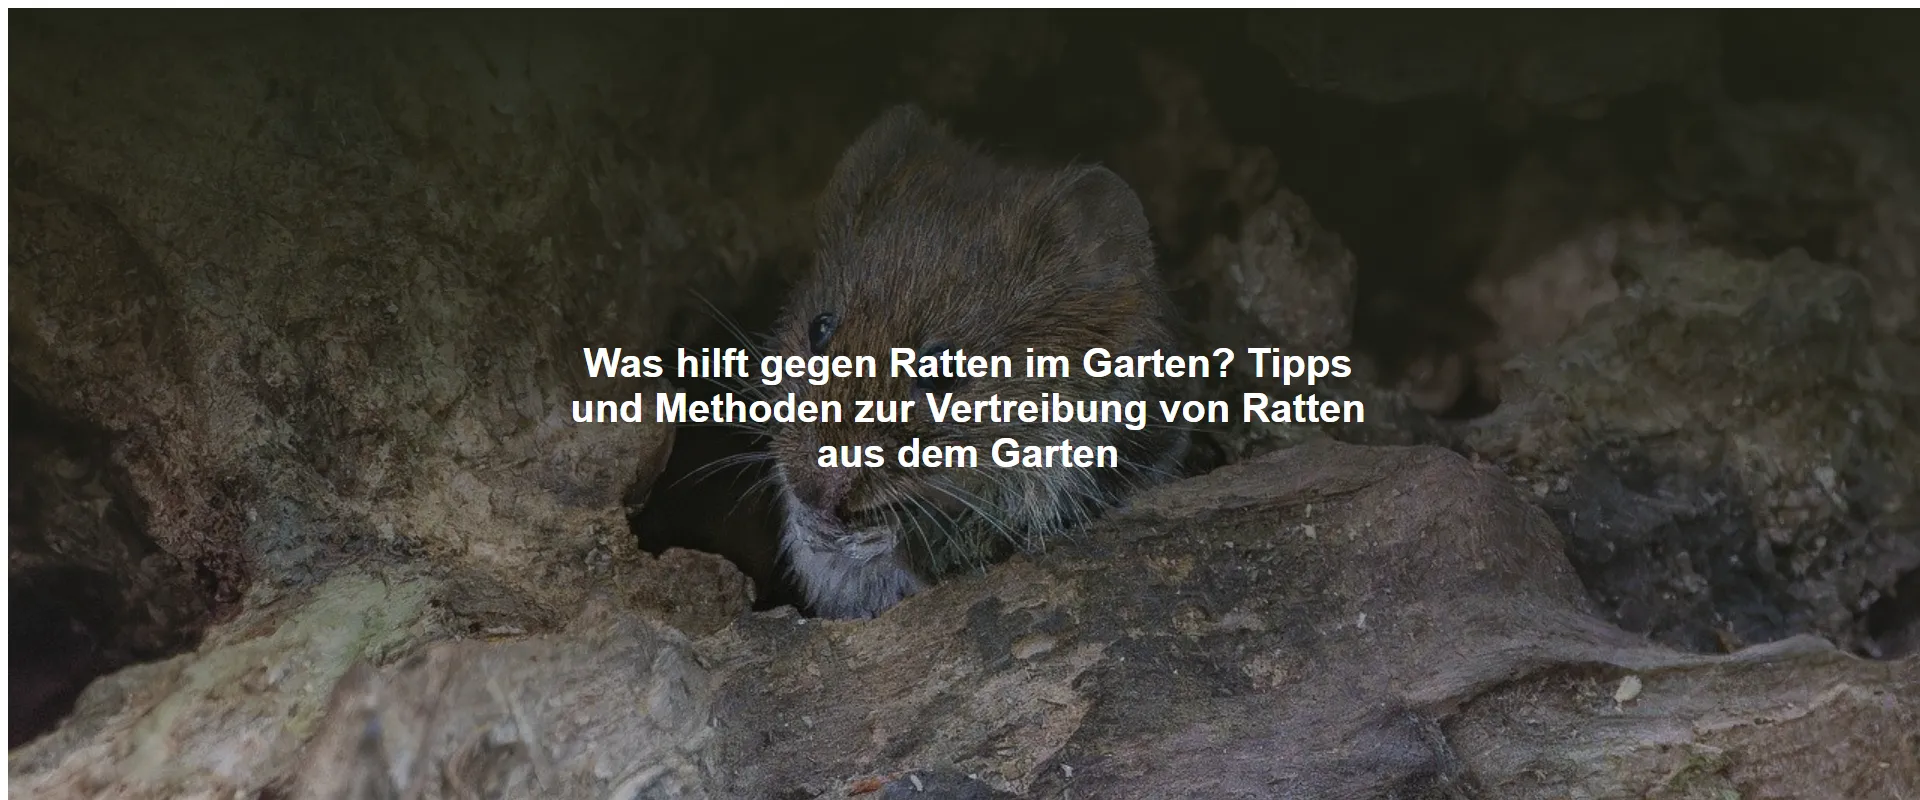 Was hilft gegen Ratten im Garten? Tipps und Methoden zur Vertreibung von Ratten aus dem Garten